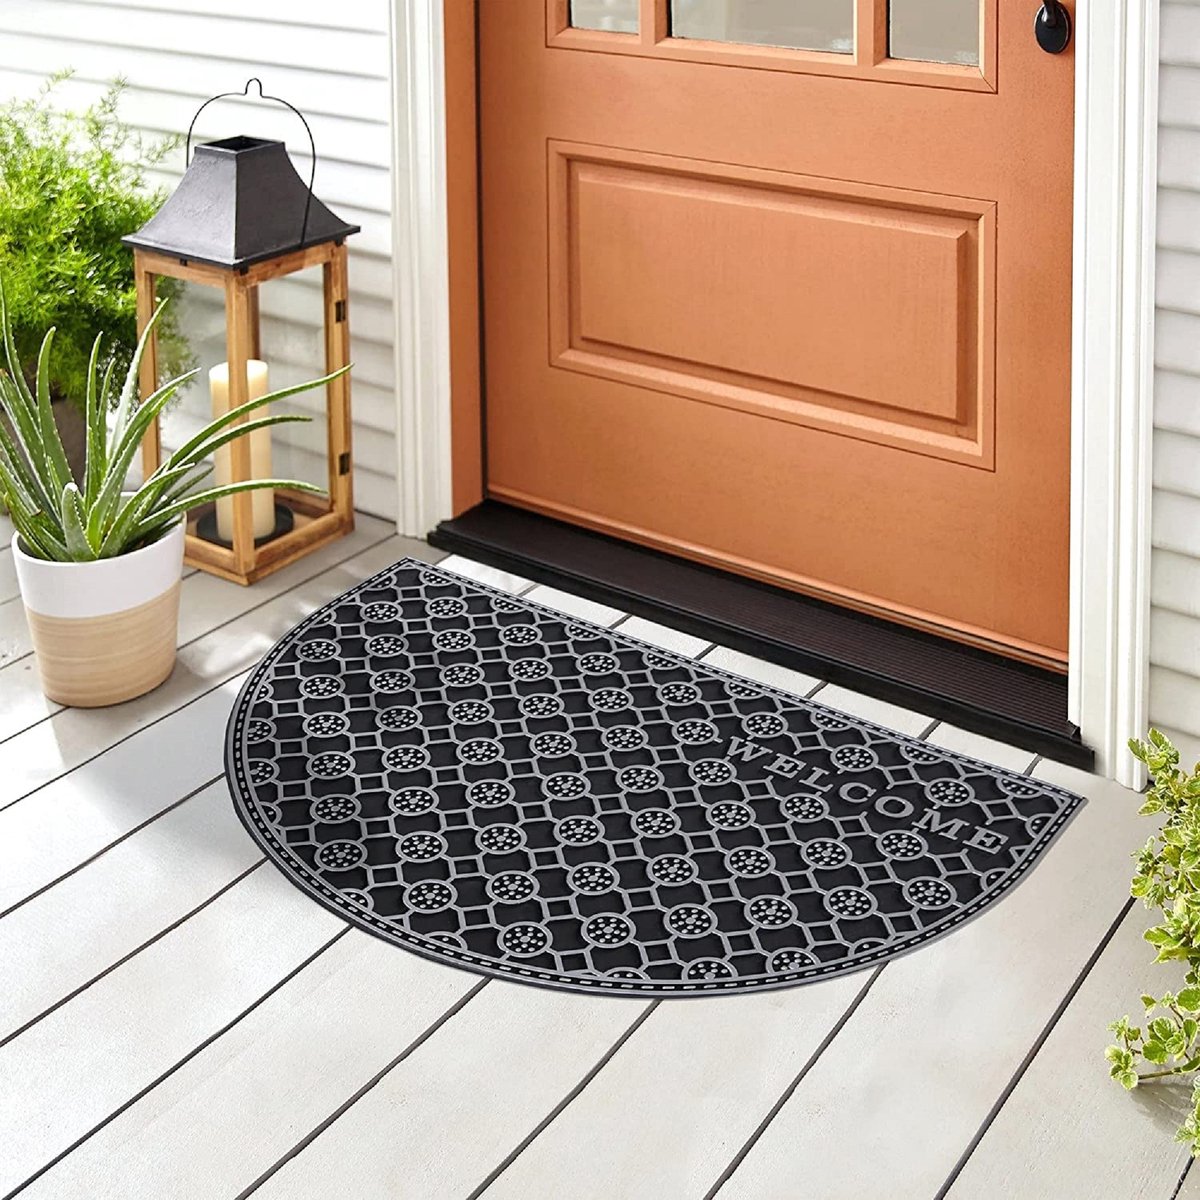 G.M. Floors Welcoming Comfort: De Beste In & Outdoor Mats Kamm - Serie Zilver / droogloopmat / deurmat binnen / deurmat buiten